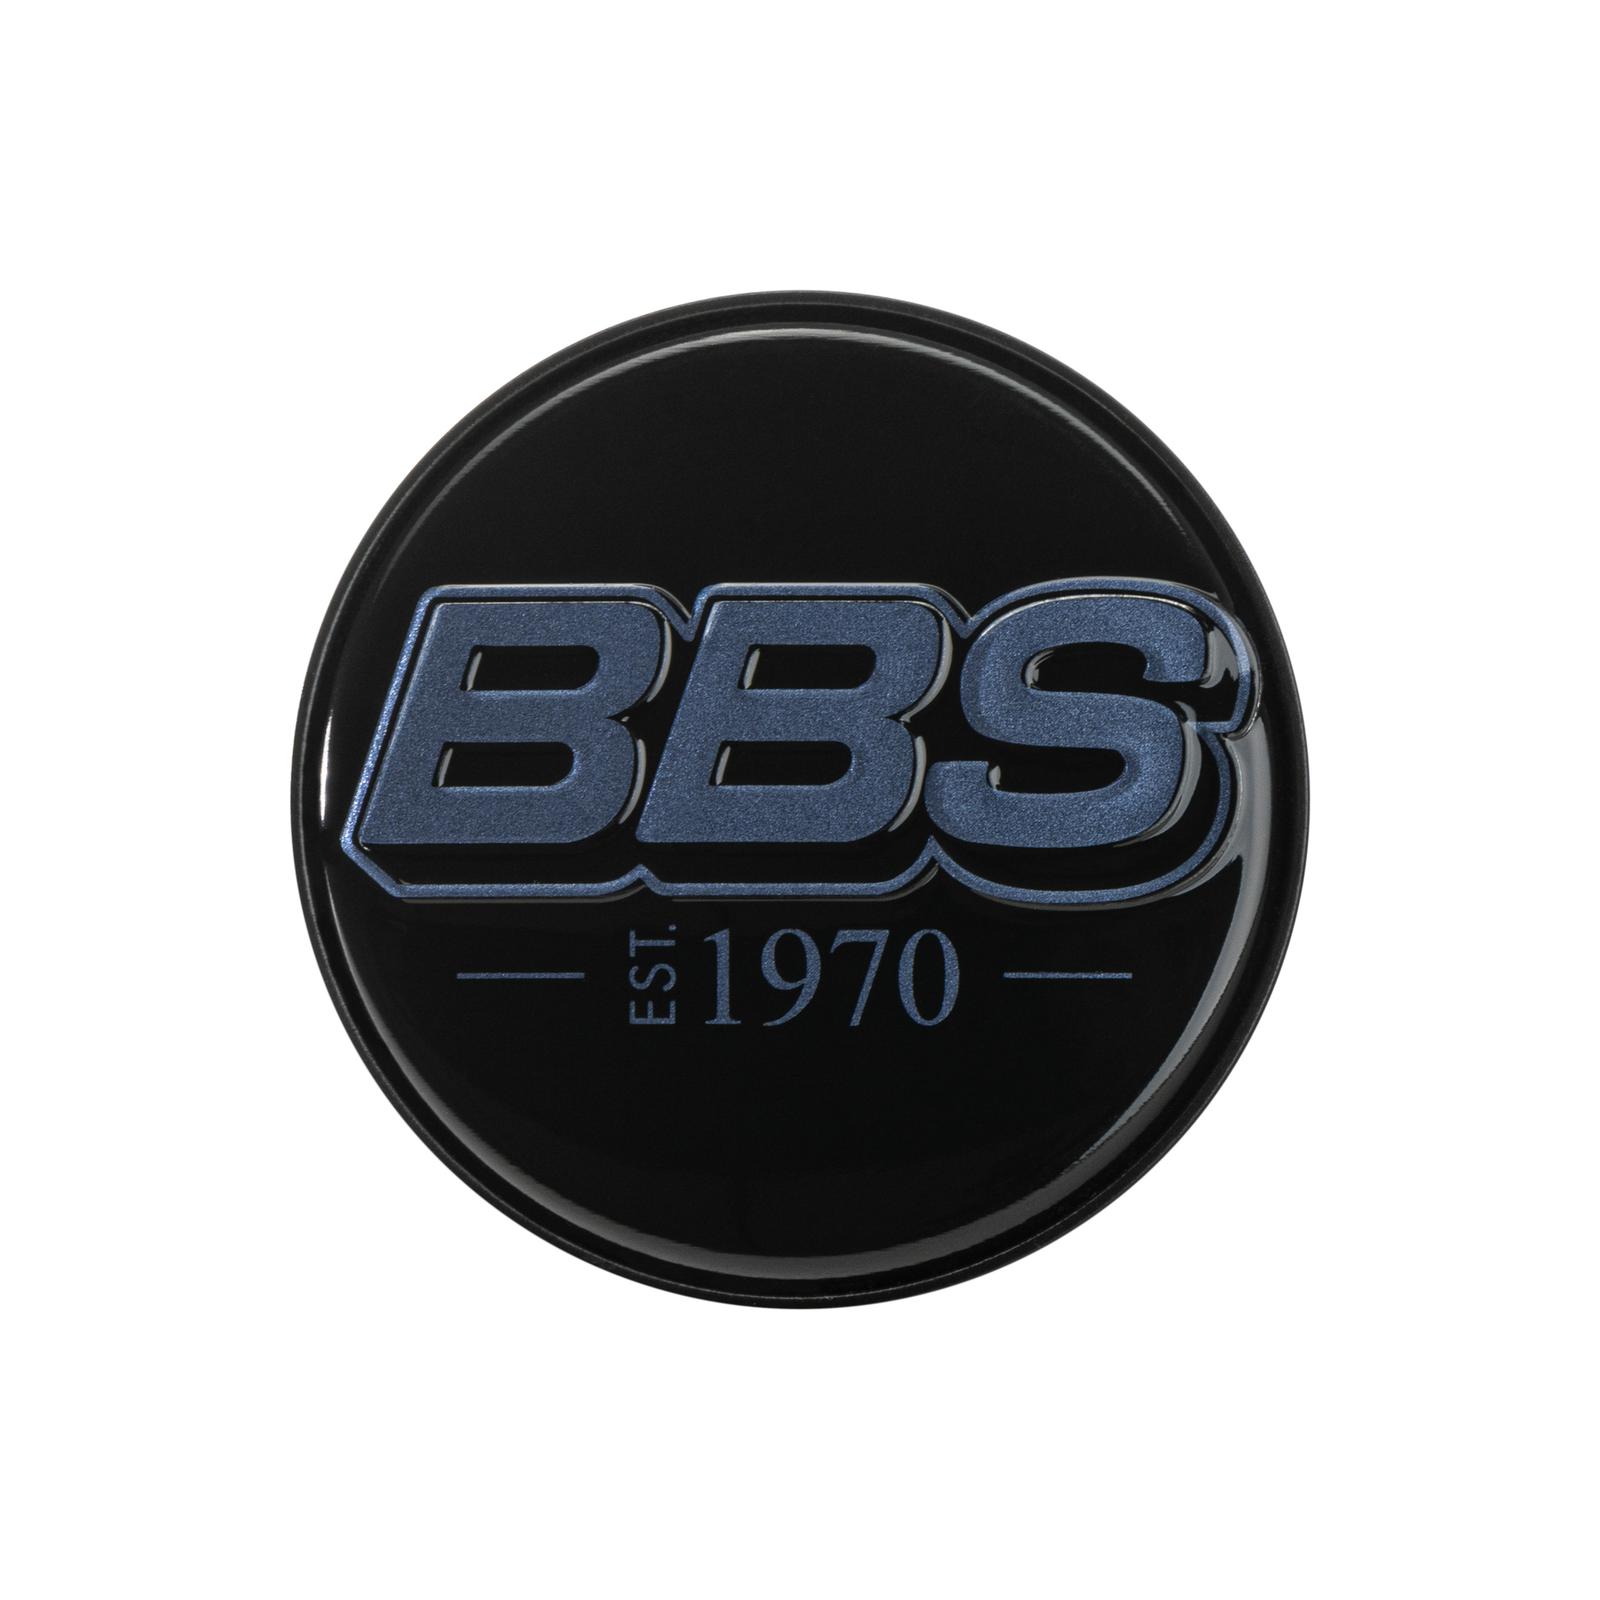 BBS 2D Nabendeckel est. 1970 geprägt schwarz mit Logo indigo blue Ø70,6mm